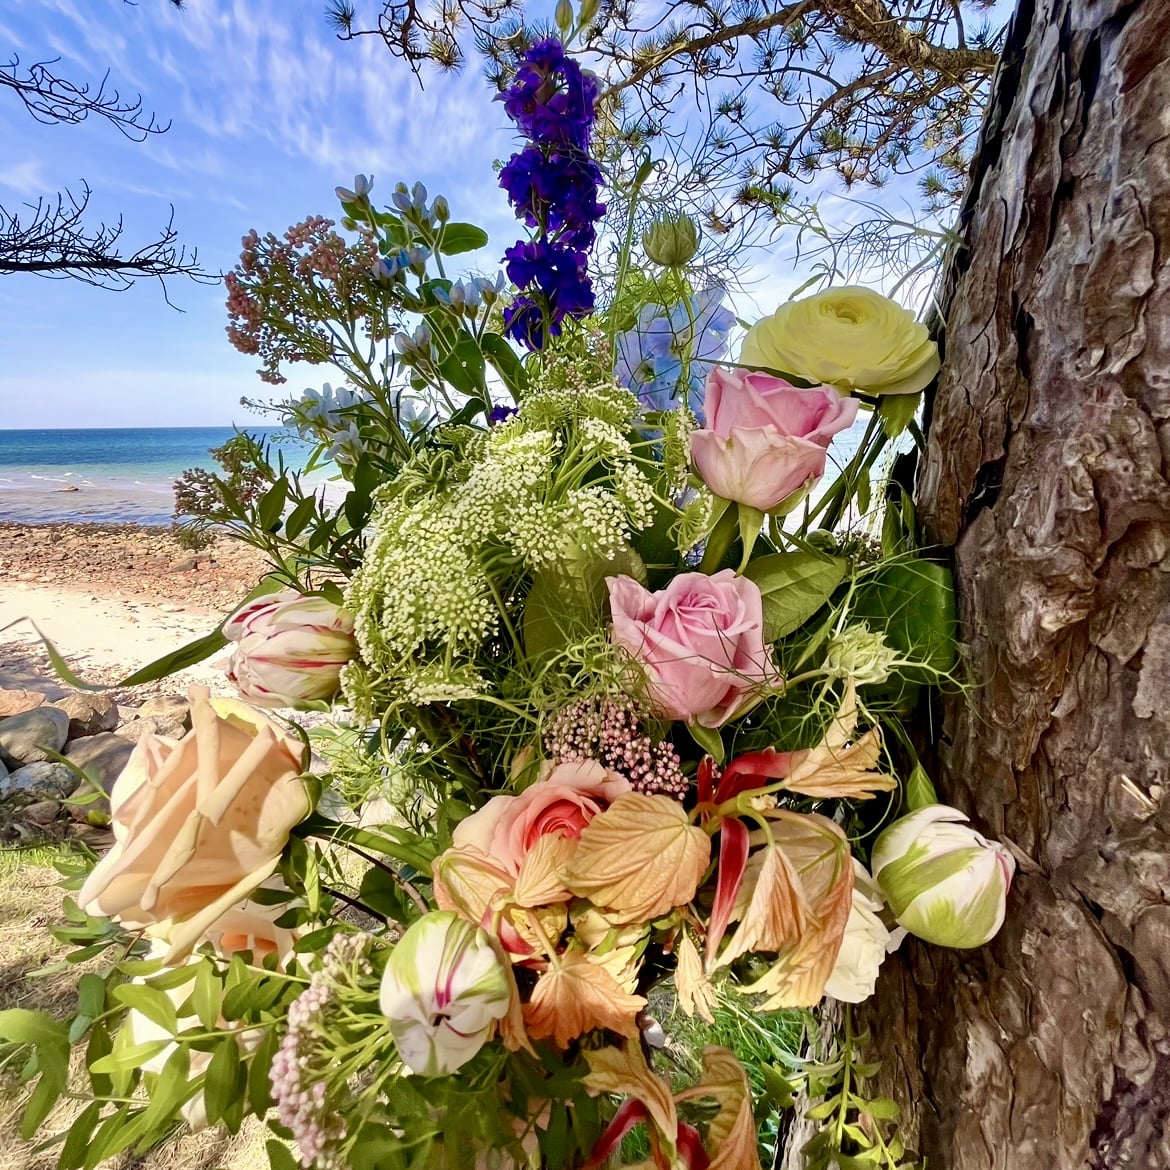 smuk buket hvor der indgår bæredygtige blomster - taget på Hornbæk starns